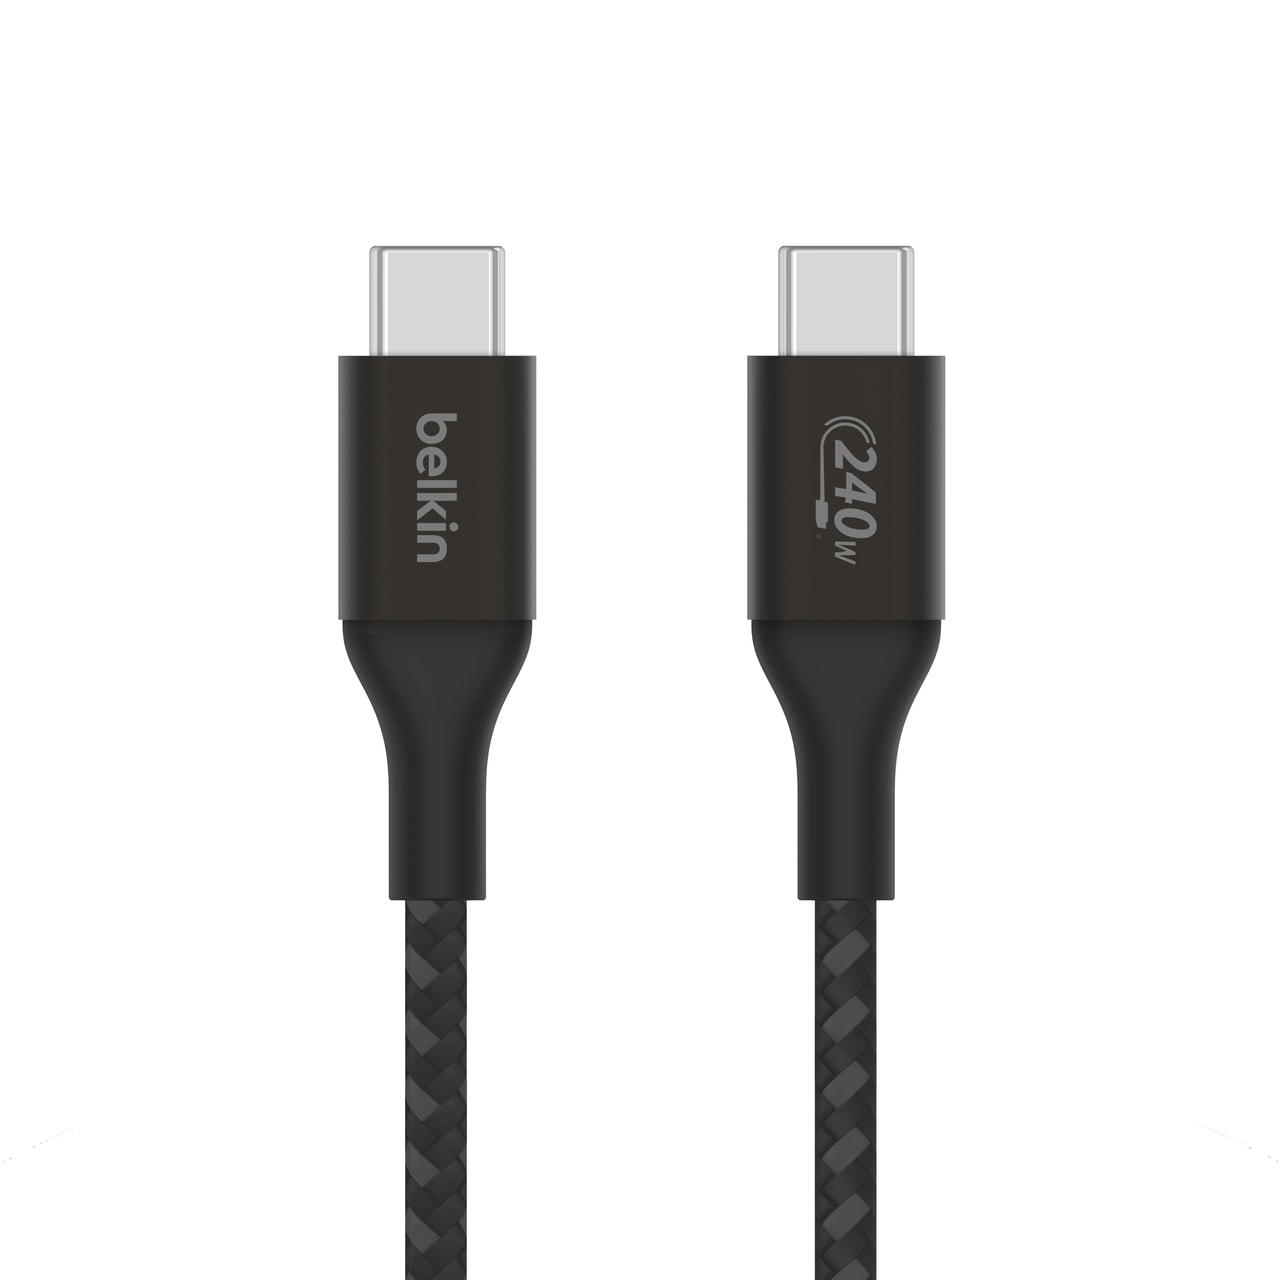 Belkin USB-Kabel »BOOST CHARGE 240W USB-C auf USB-C Kabel, 1m«, USB Typ C-USB Typ C, 100 cm